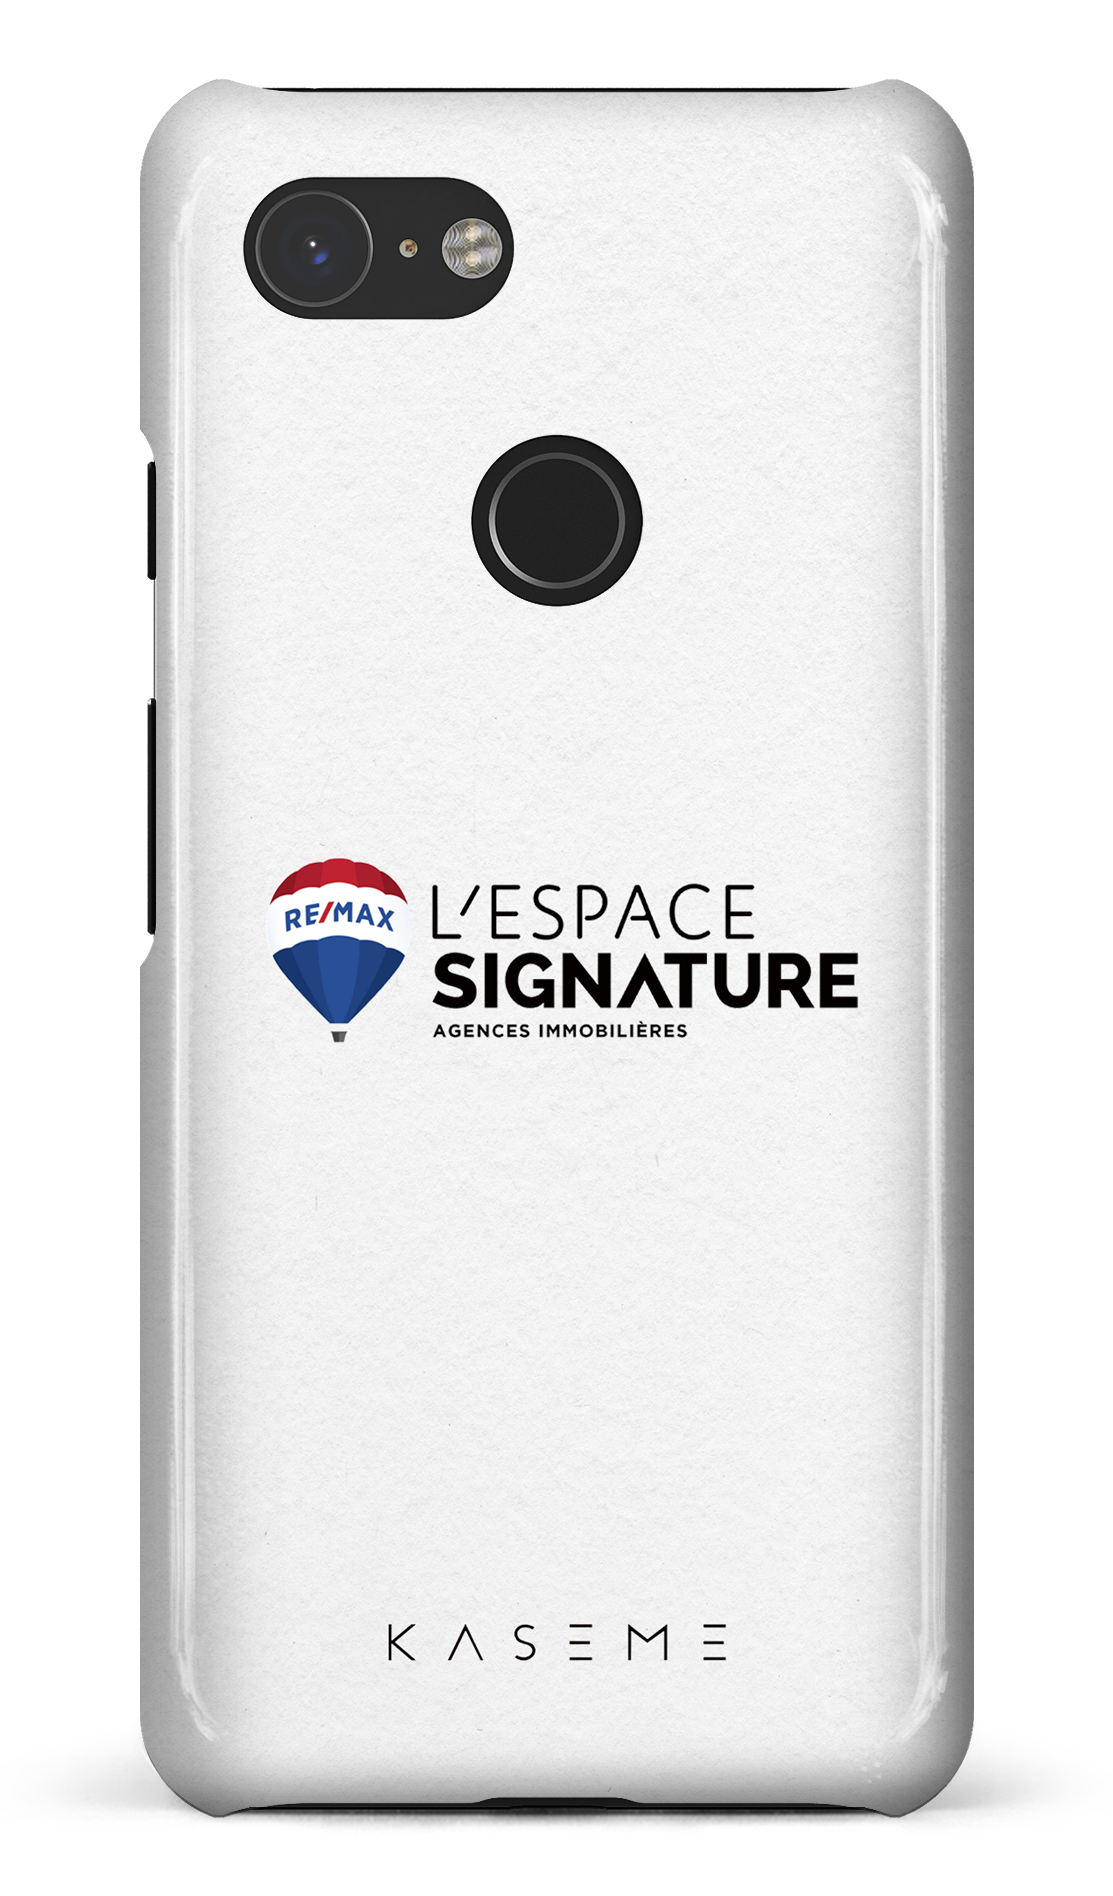 Remax Signature L'Espace Blanc - Google Pixel 3